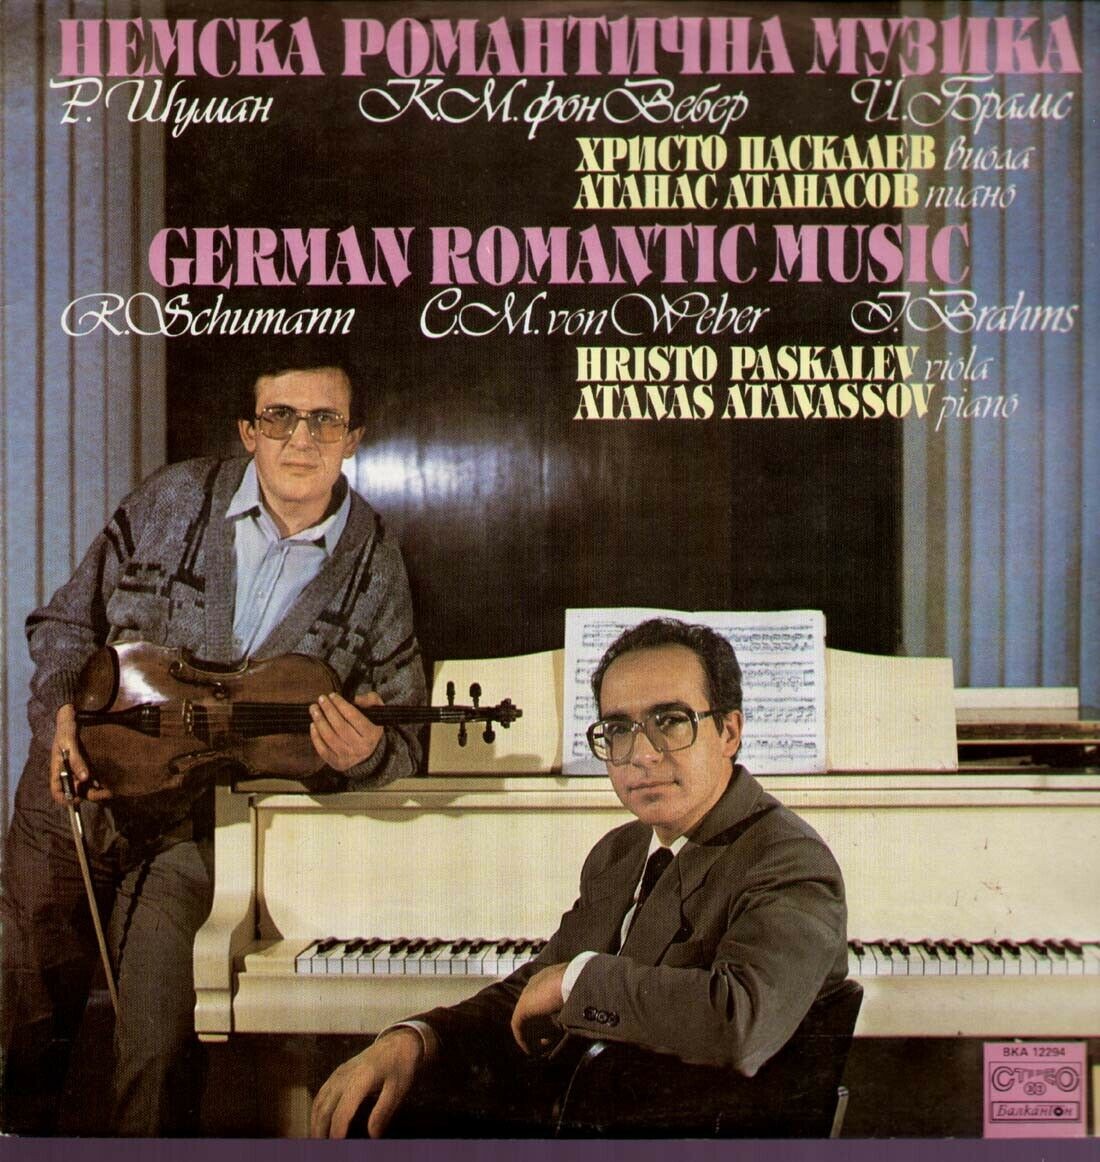 Немска романтична музика. Изпълняват Христо Паскалев - виола и Атанас Атанасов - пиано